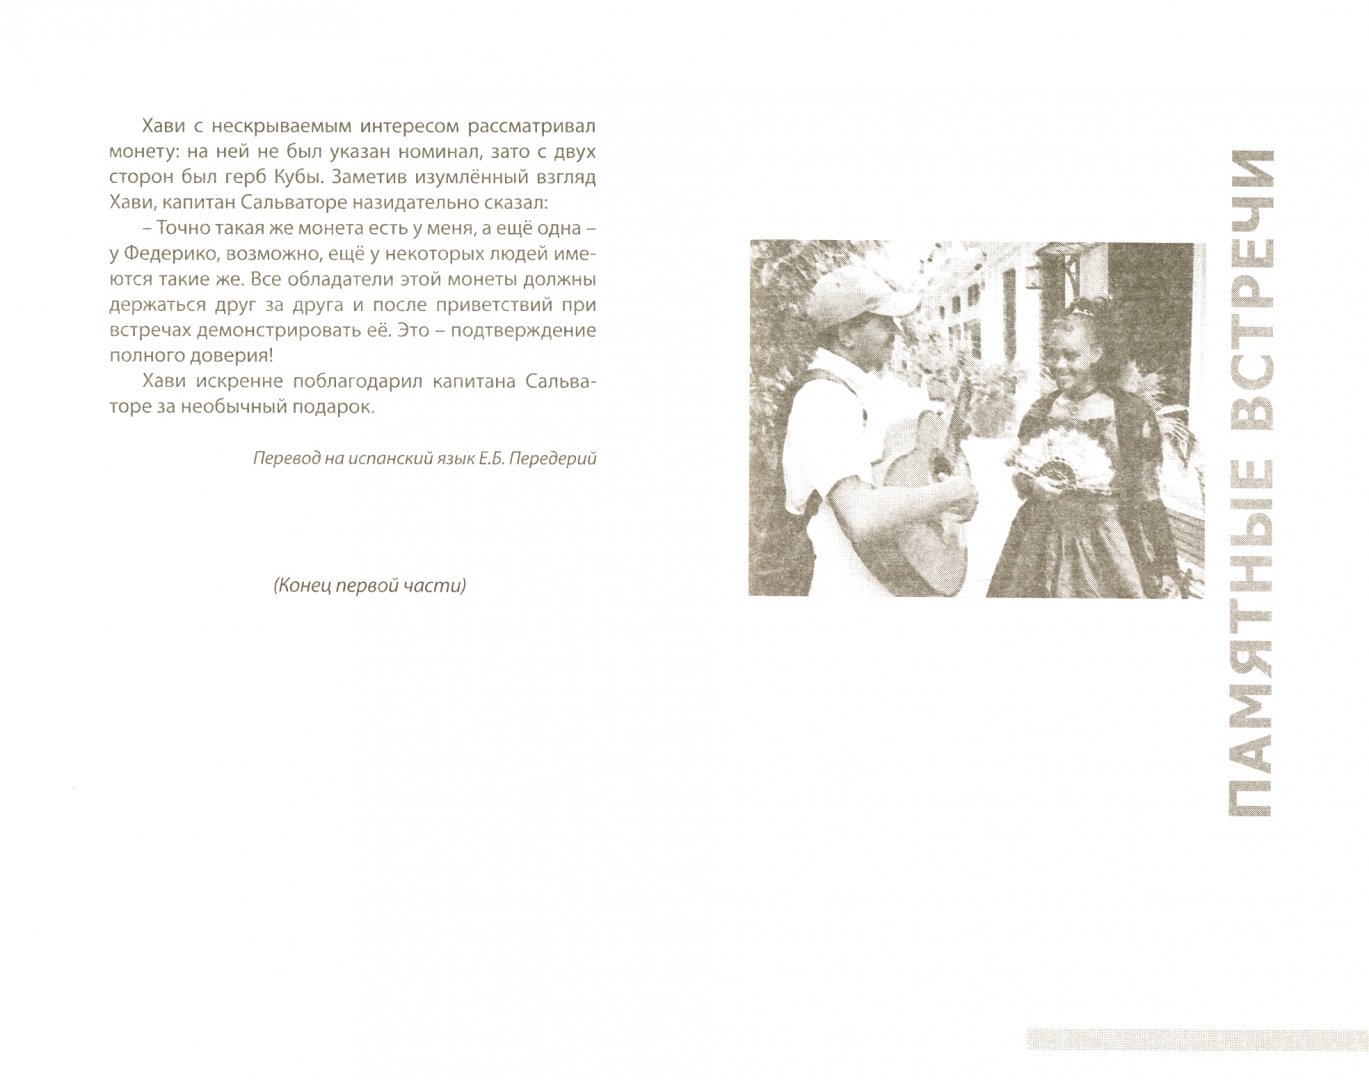 Иллюстрация 1 из 5 для Кубинский привет - Игорь Нехамес | Лабиринт - книги. Источник: Лабиринт